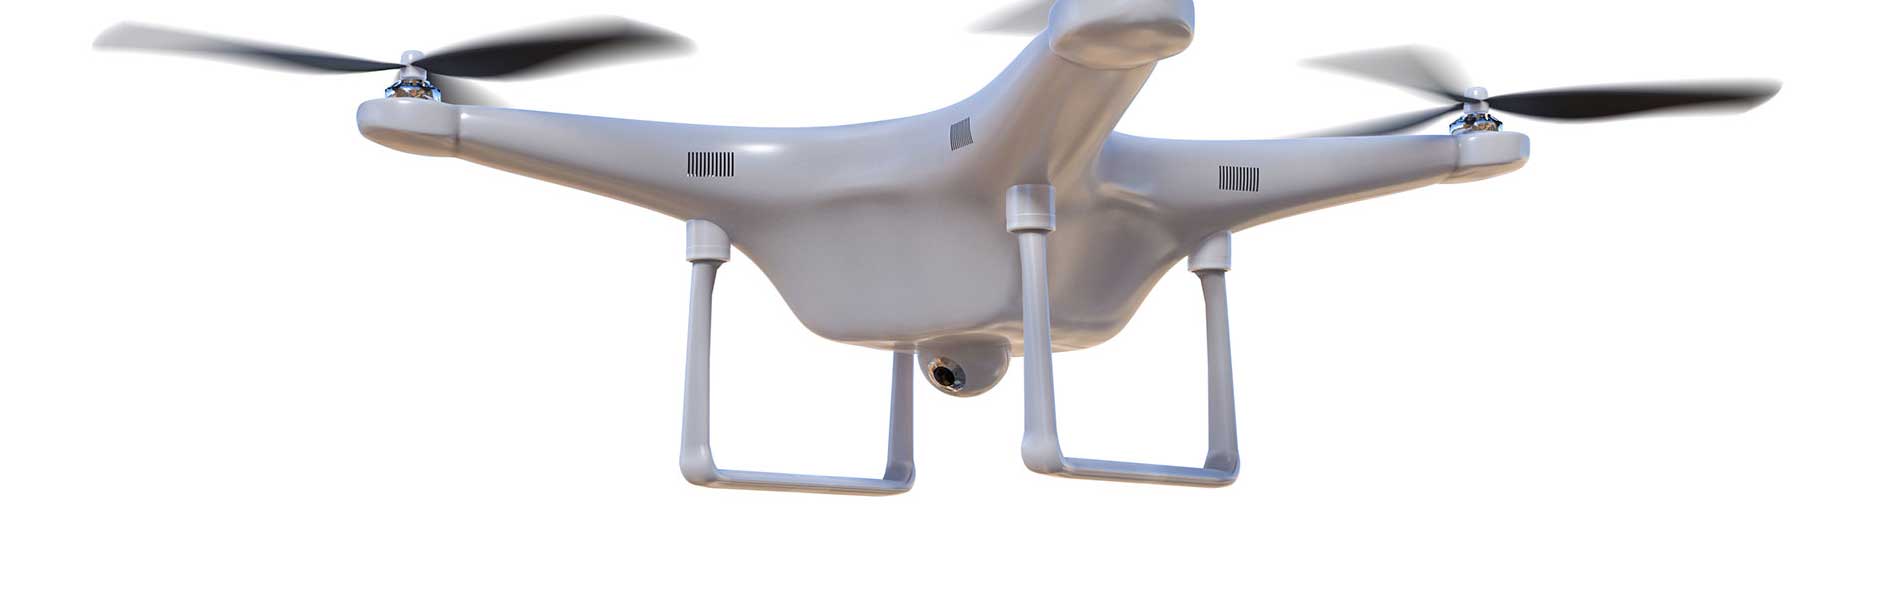 Exploitant drone